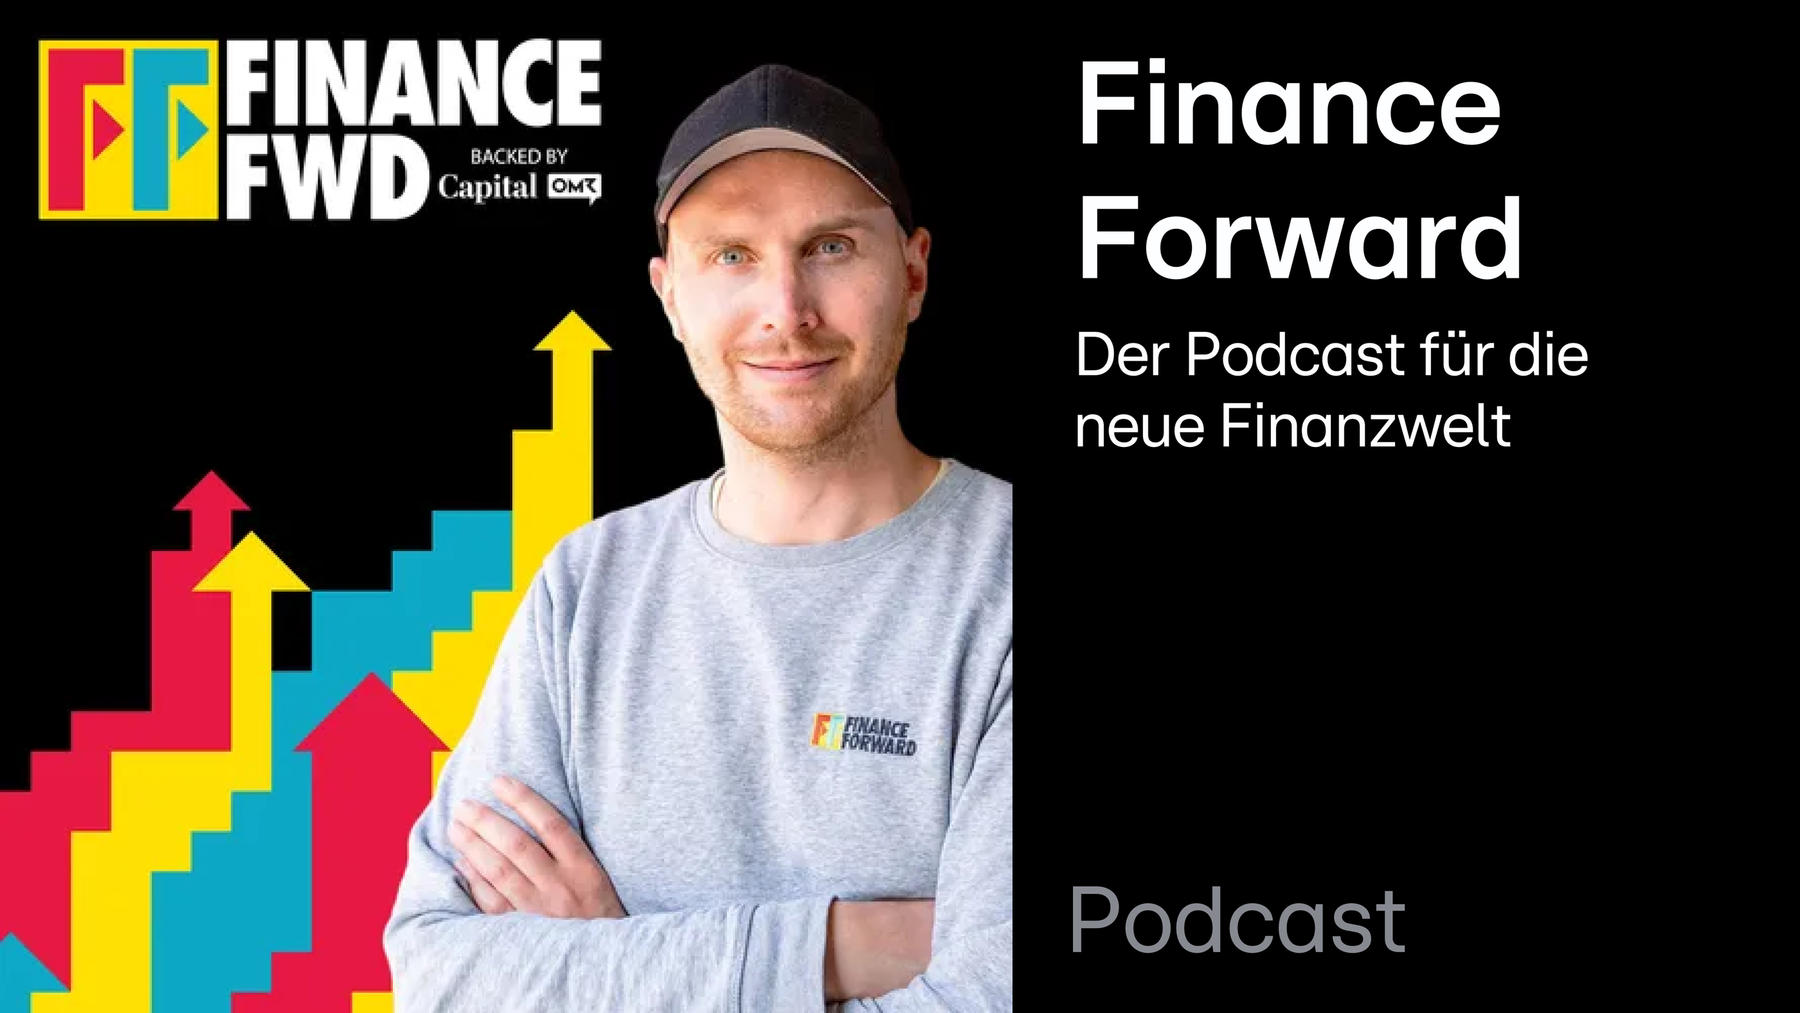 Podcast: Finance Forward – der Podcast für die neue Finanzwelt